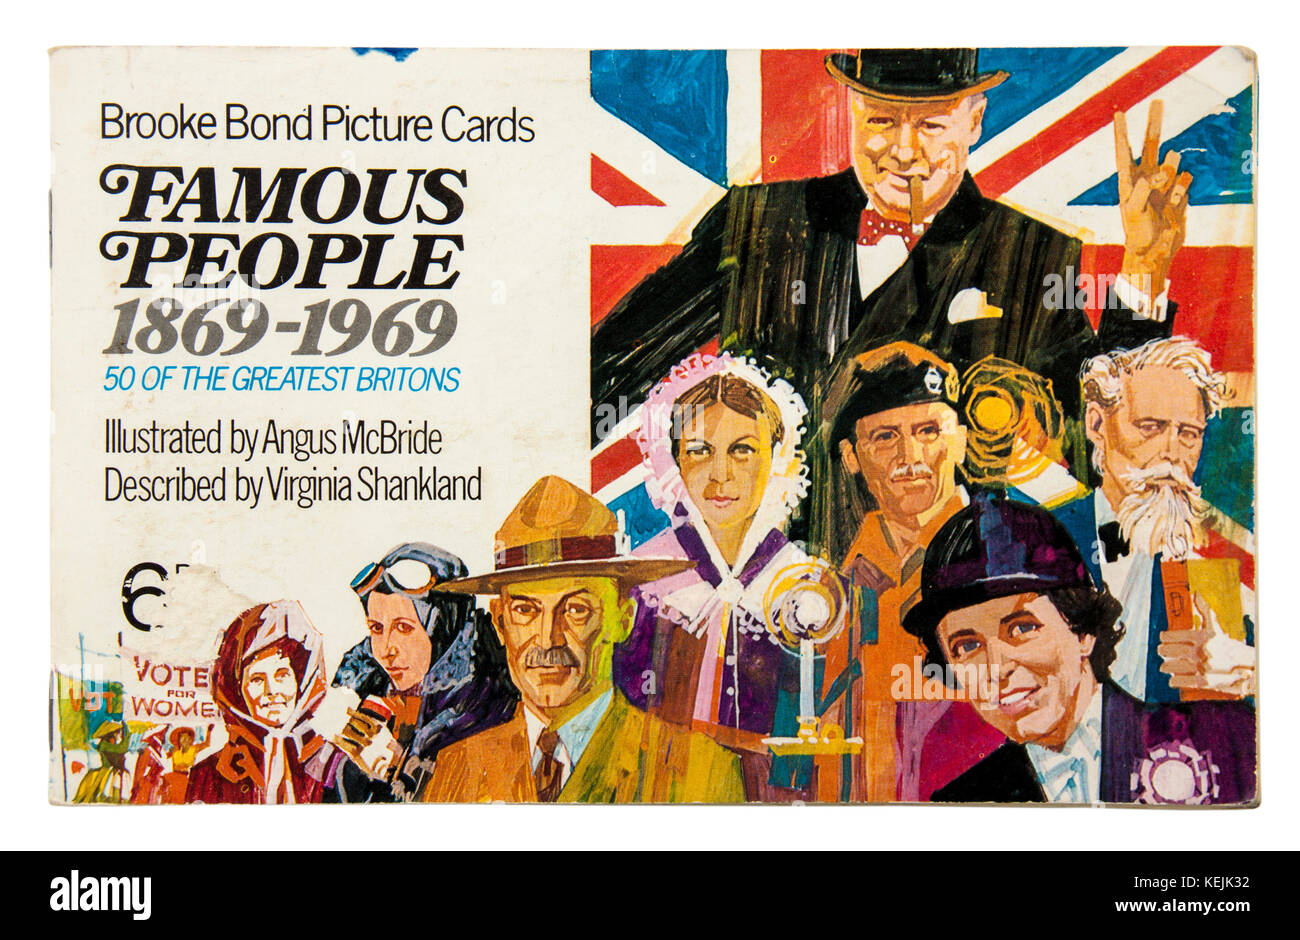 'Gente famosa' 1869-1969 Brooke Bond Picture Cards álbum, publicado en 1969 con ilustraciones de Angus McBride Foto de stock